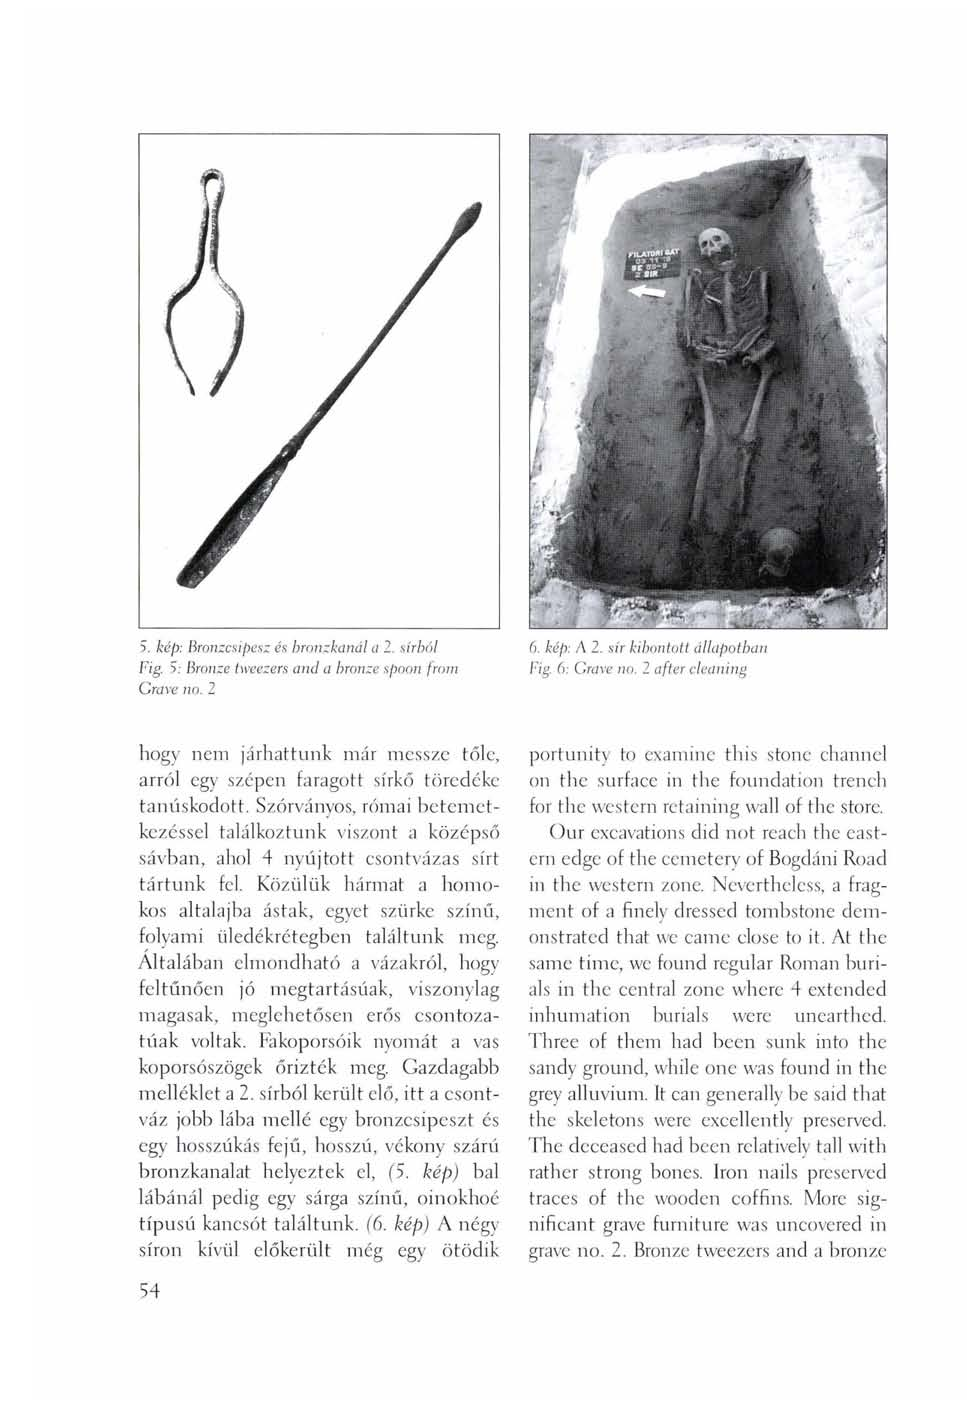 5. kép: Bronzcsipesz és hronzkanál a 2. sírból Fig. S: Bronze tweezers and a bronze spoon from Grave no. 2 6. kép: A 2. sír kibontott állapotbai Fig 6: Grave no.